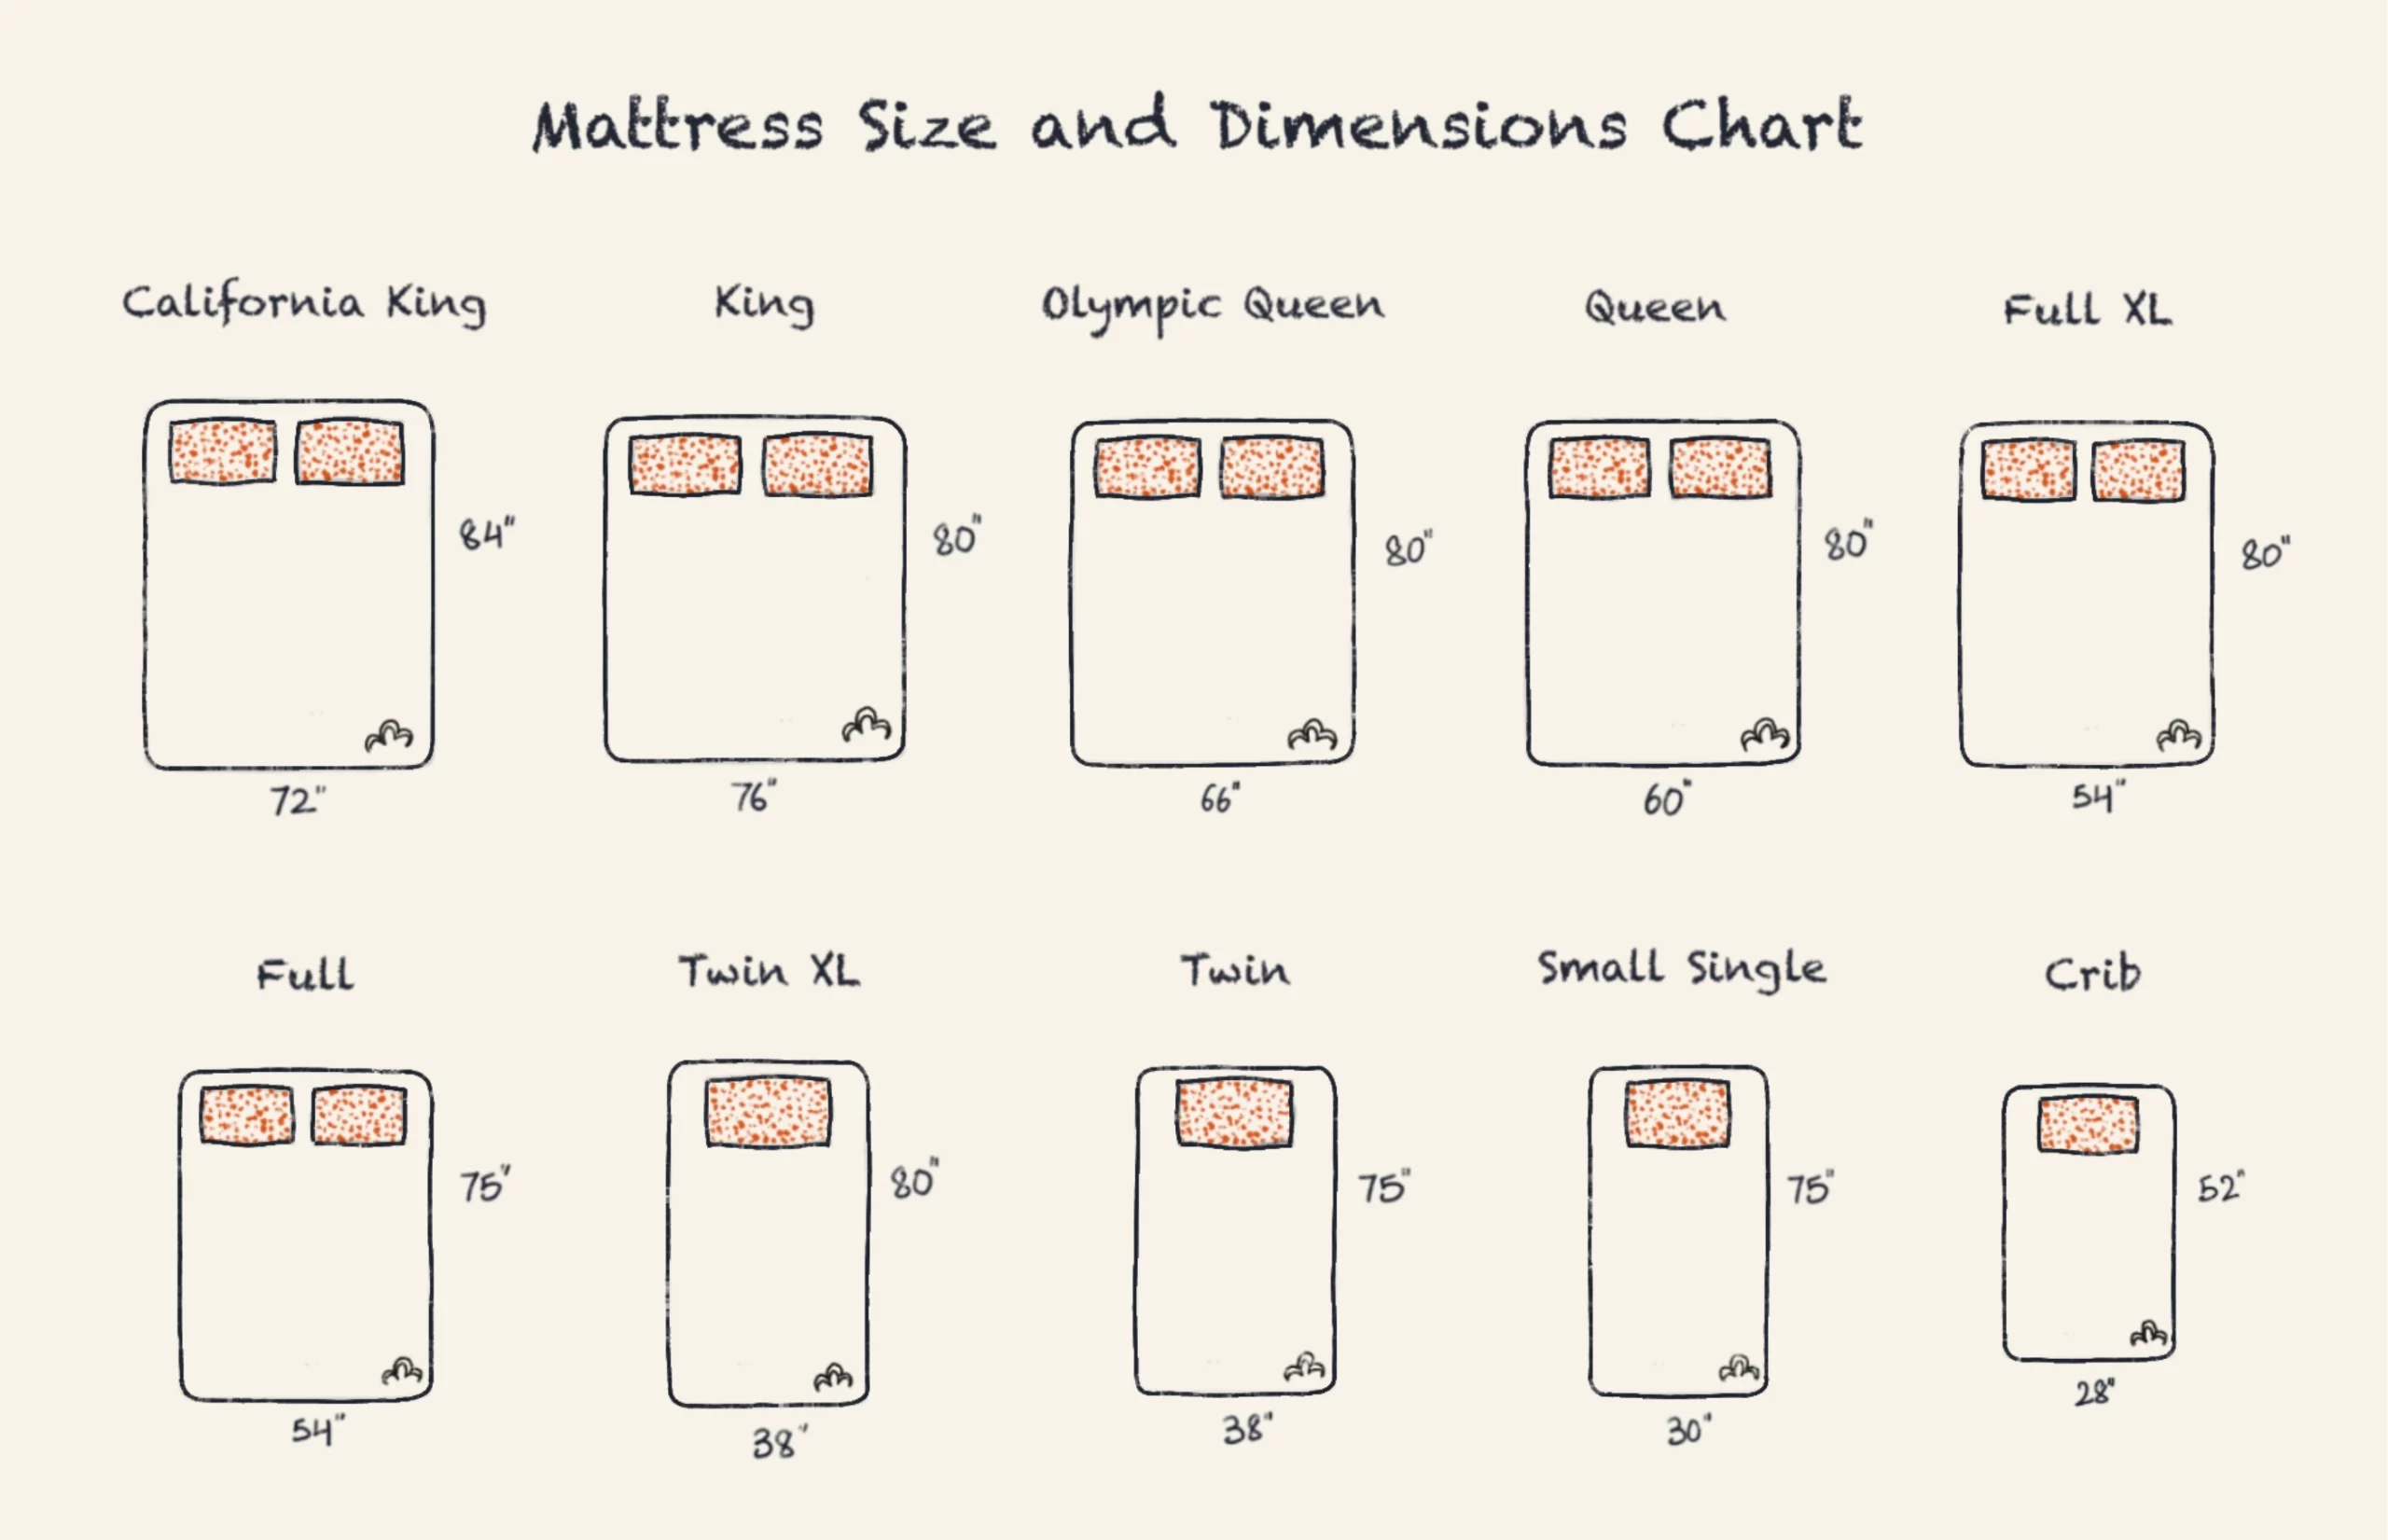 Mattress & Bed Size Dimension Comparison Guide 20